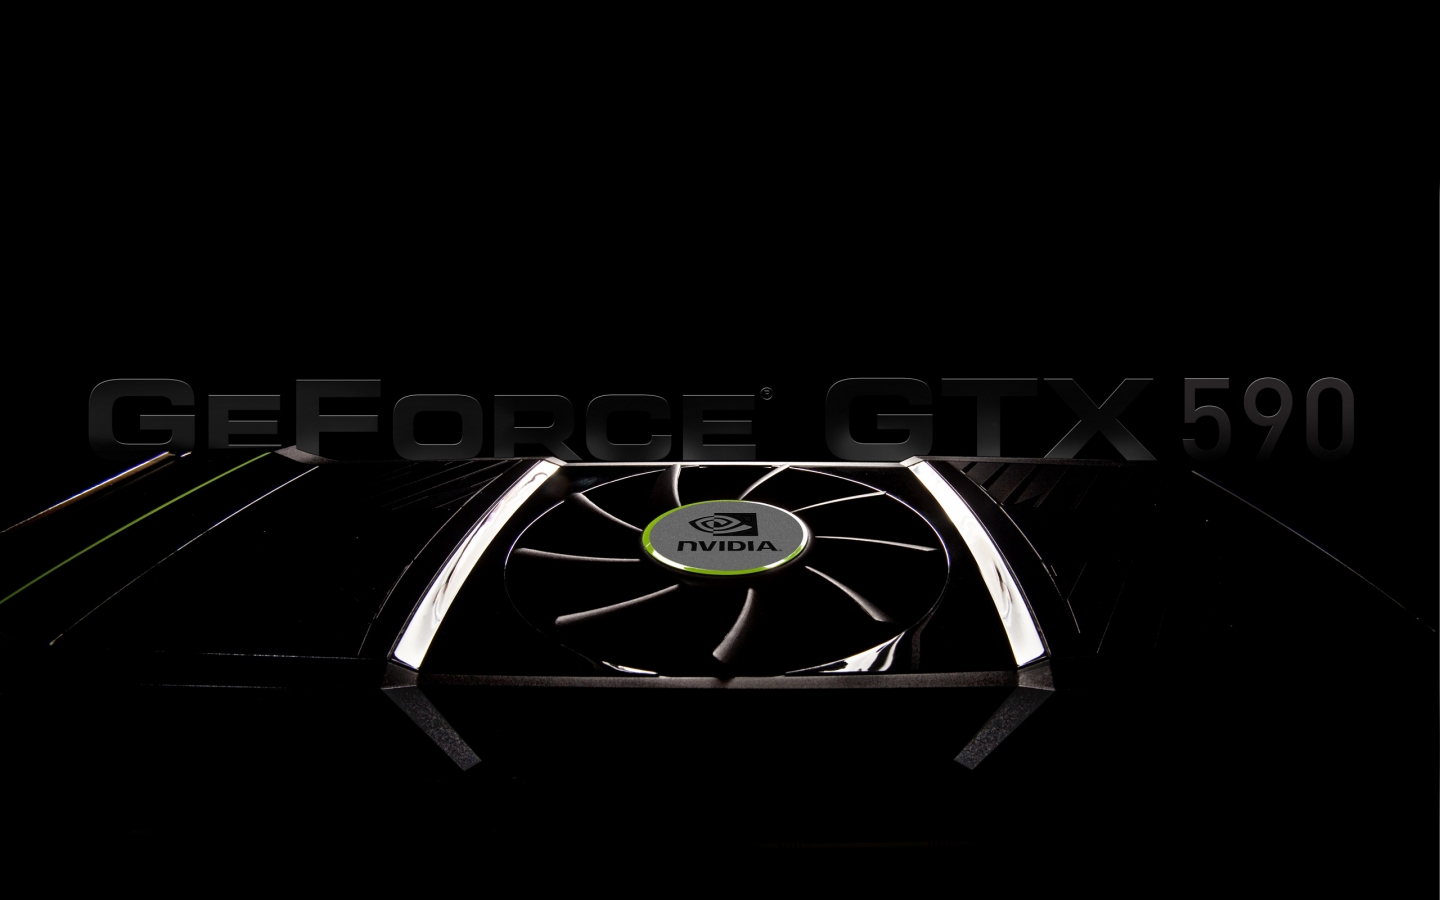 GeForce GTX 590 for 1440 x 900 widescreen resolution